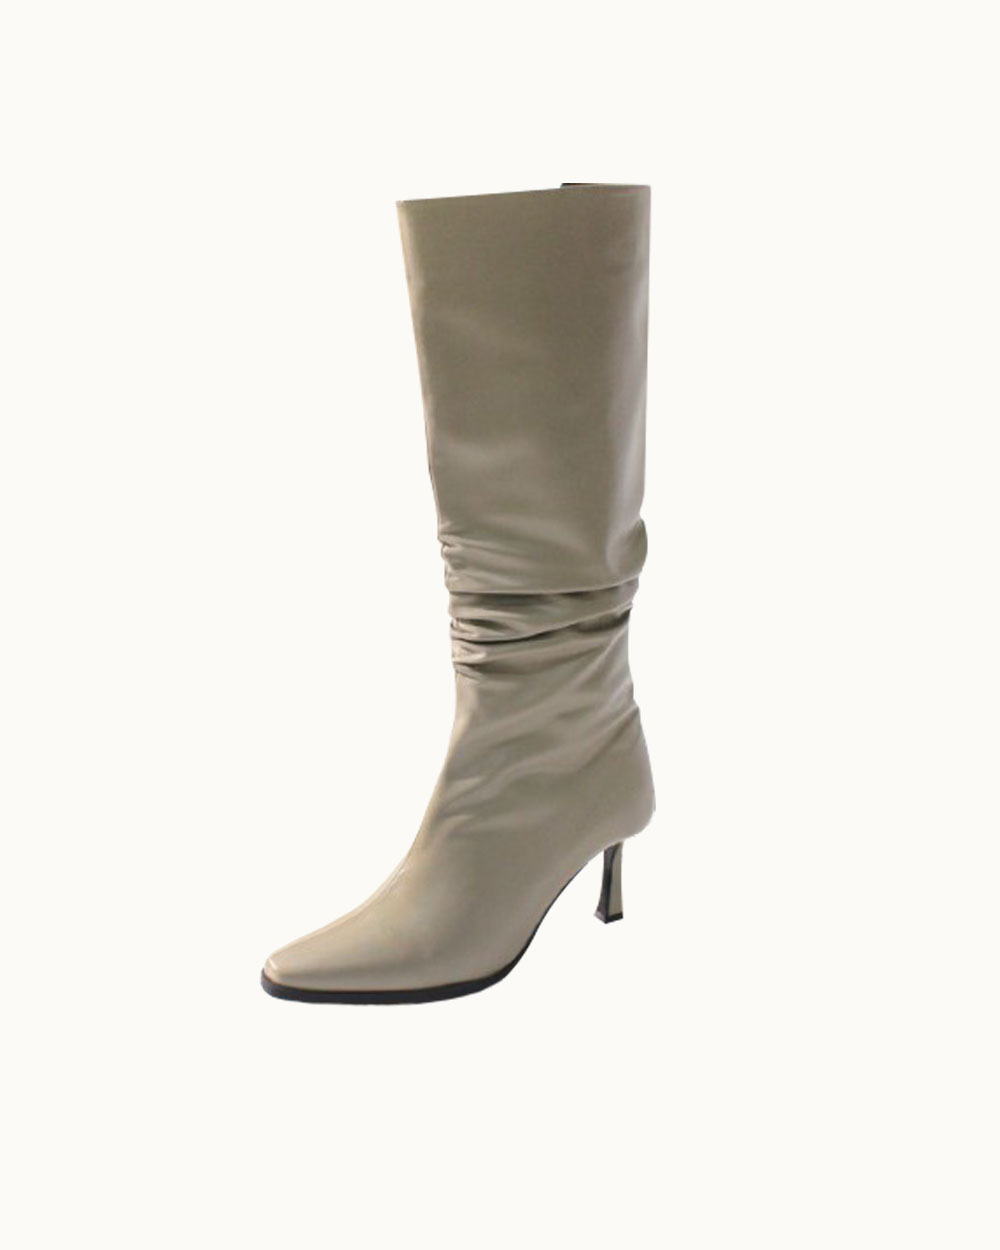 Greta Wrinkle Long Boots (Etoffe)